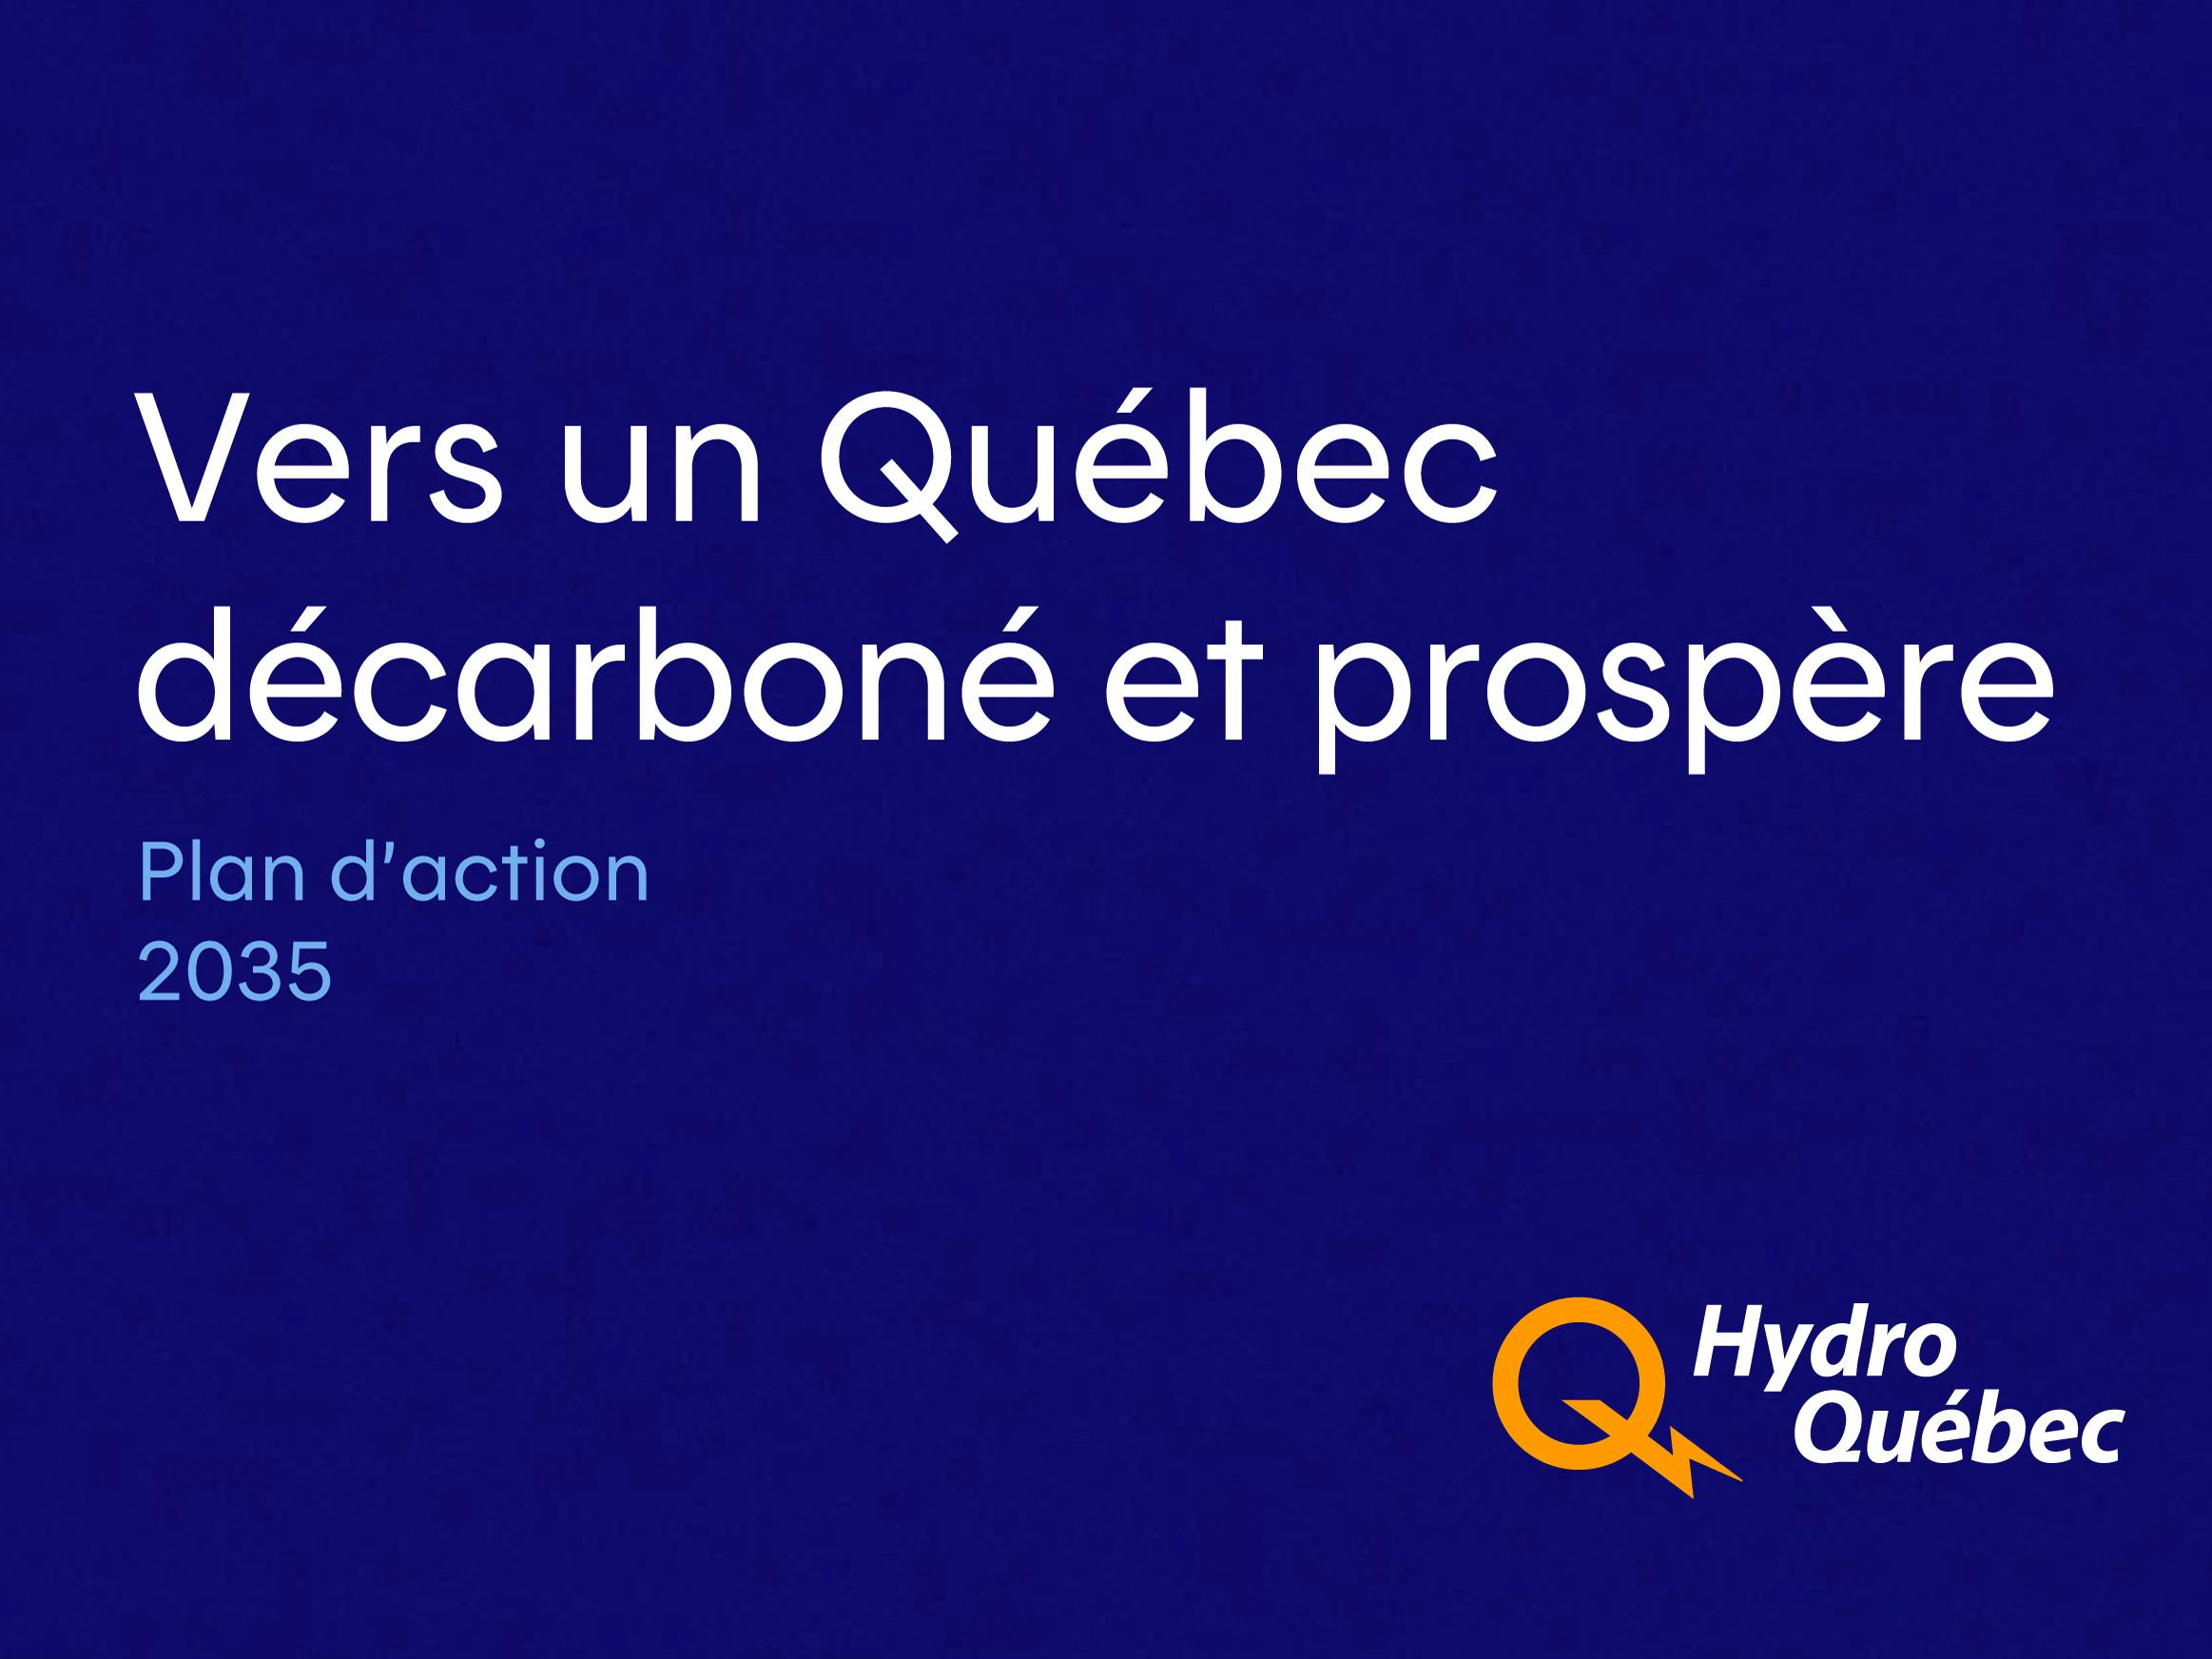 Plan d'action 2035 - Vers un Québec décarboné et prospère